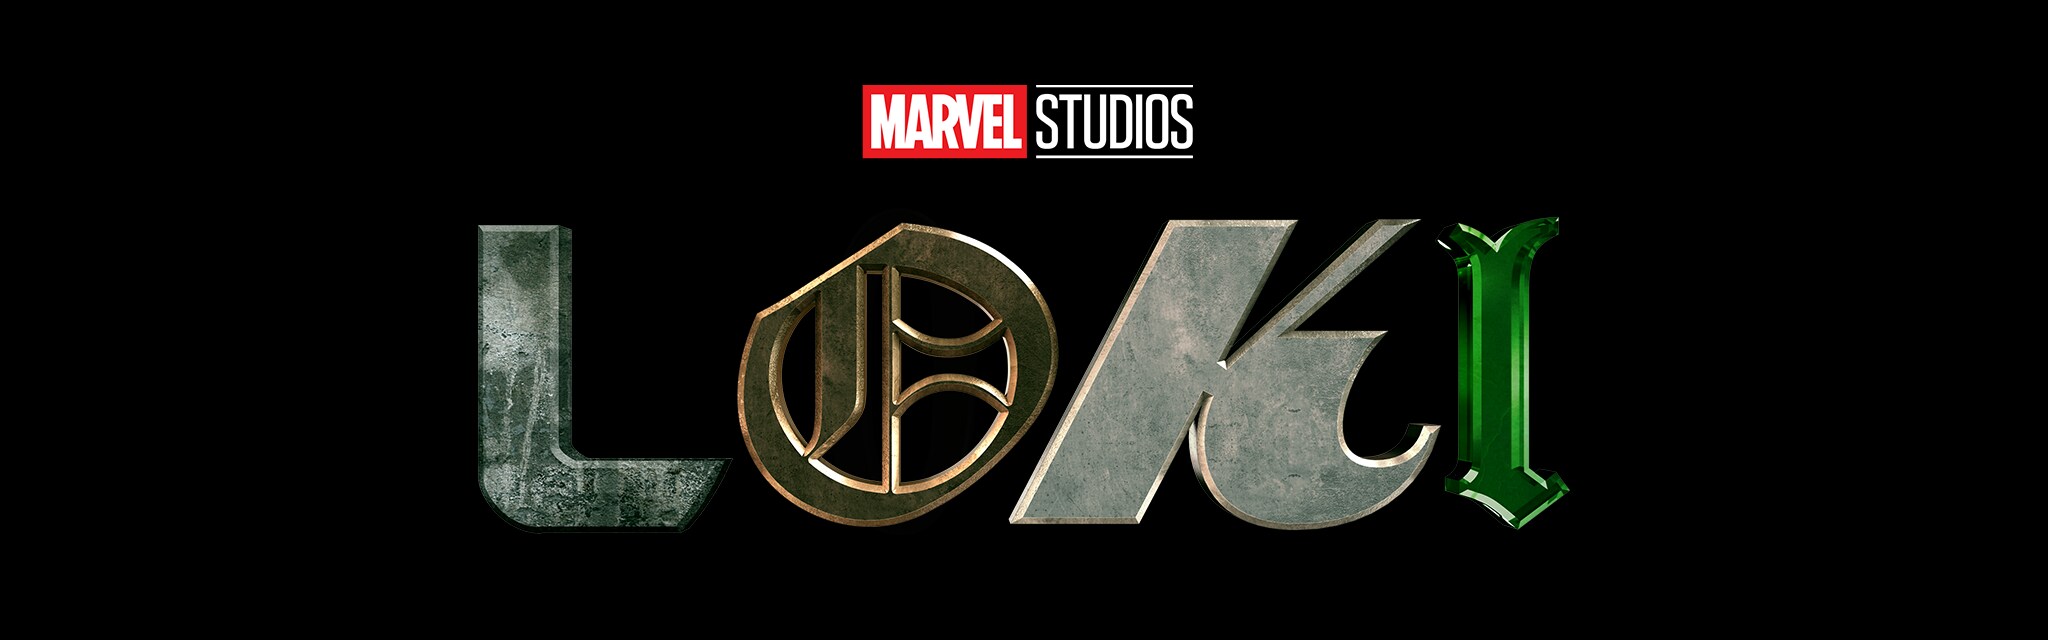 Marvel Studios | Loki